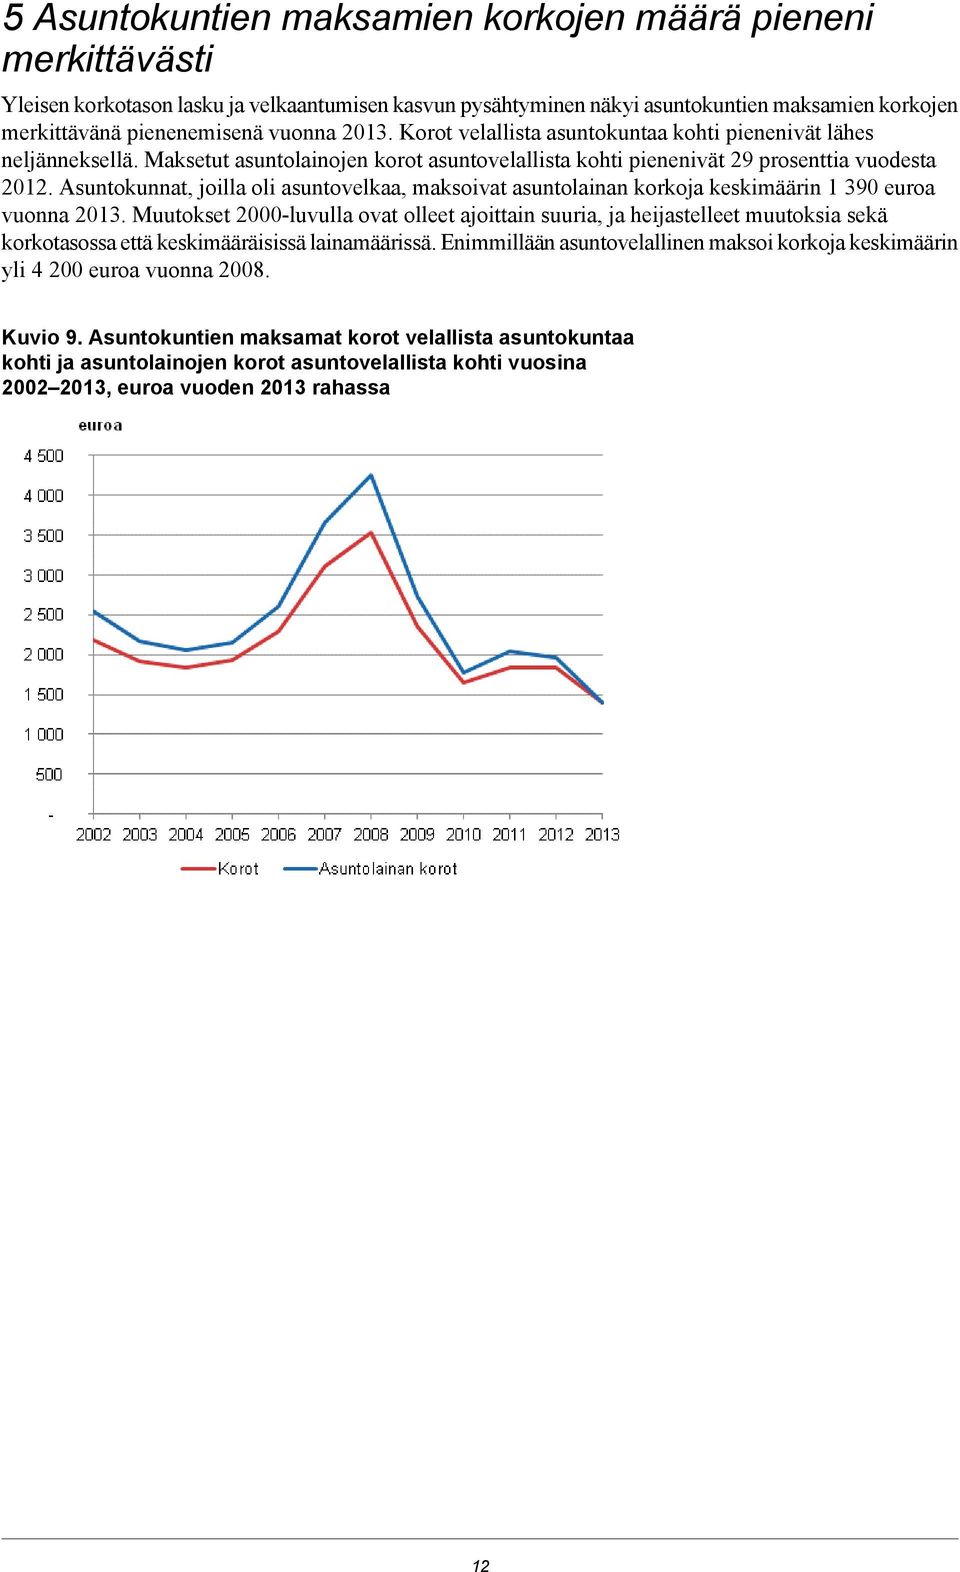 Asuntokunnat, joilla oli asuntovelkaa, maksoivat asuntolainan korkoja keskimäärin 1 390 euroa vuonna 2013.